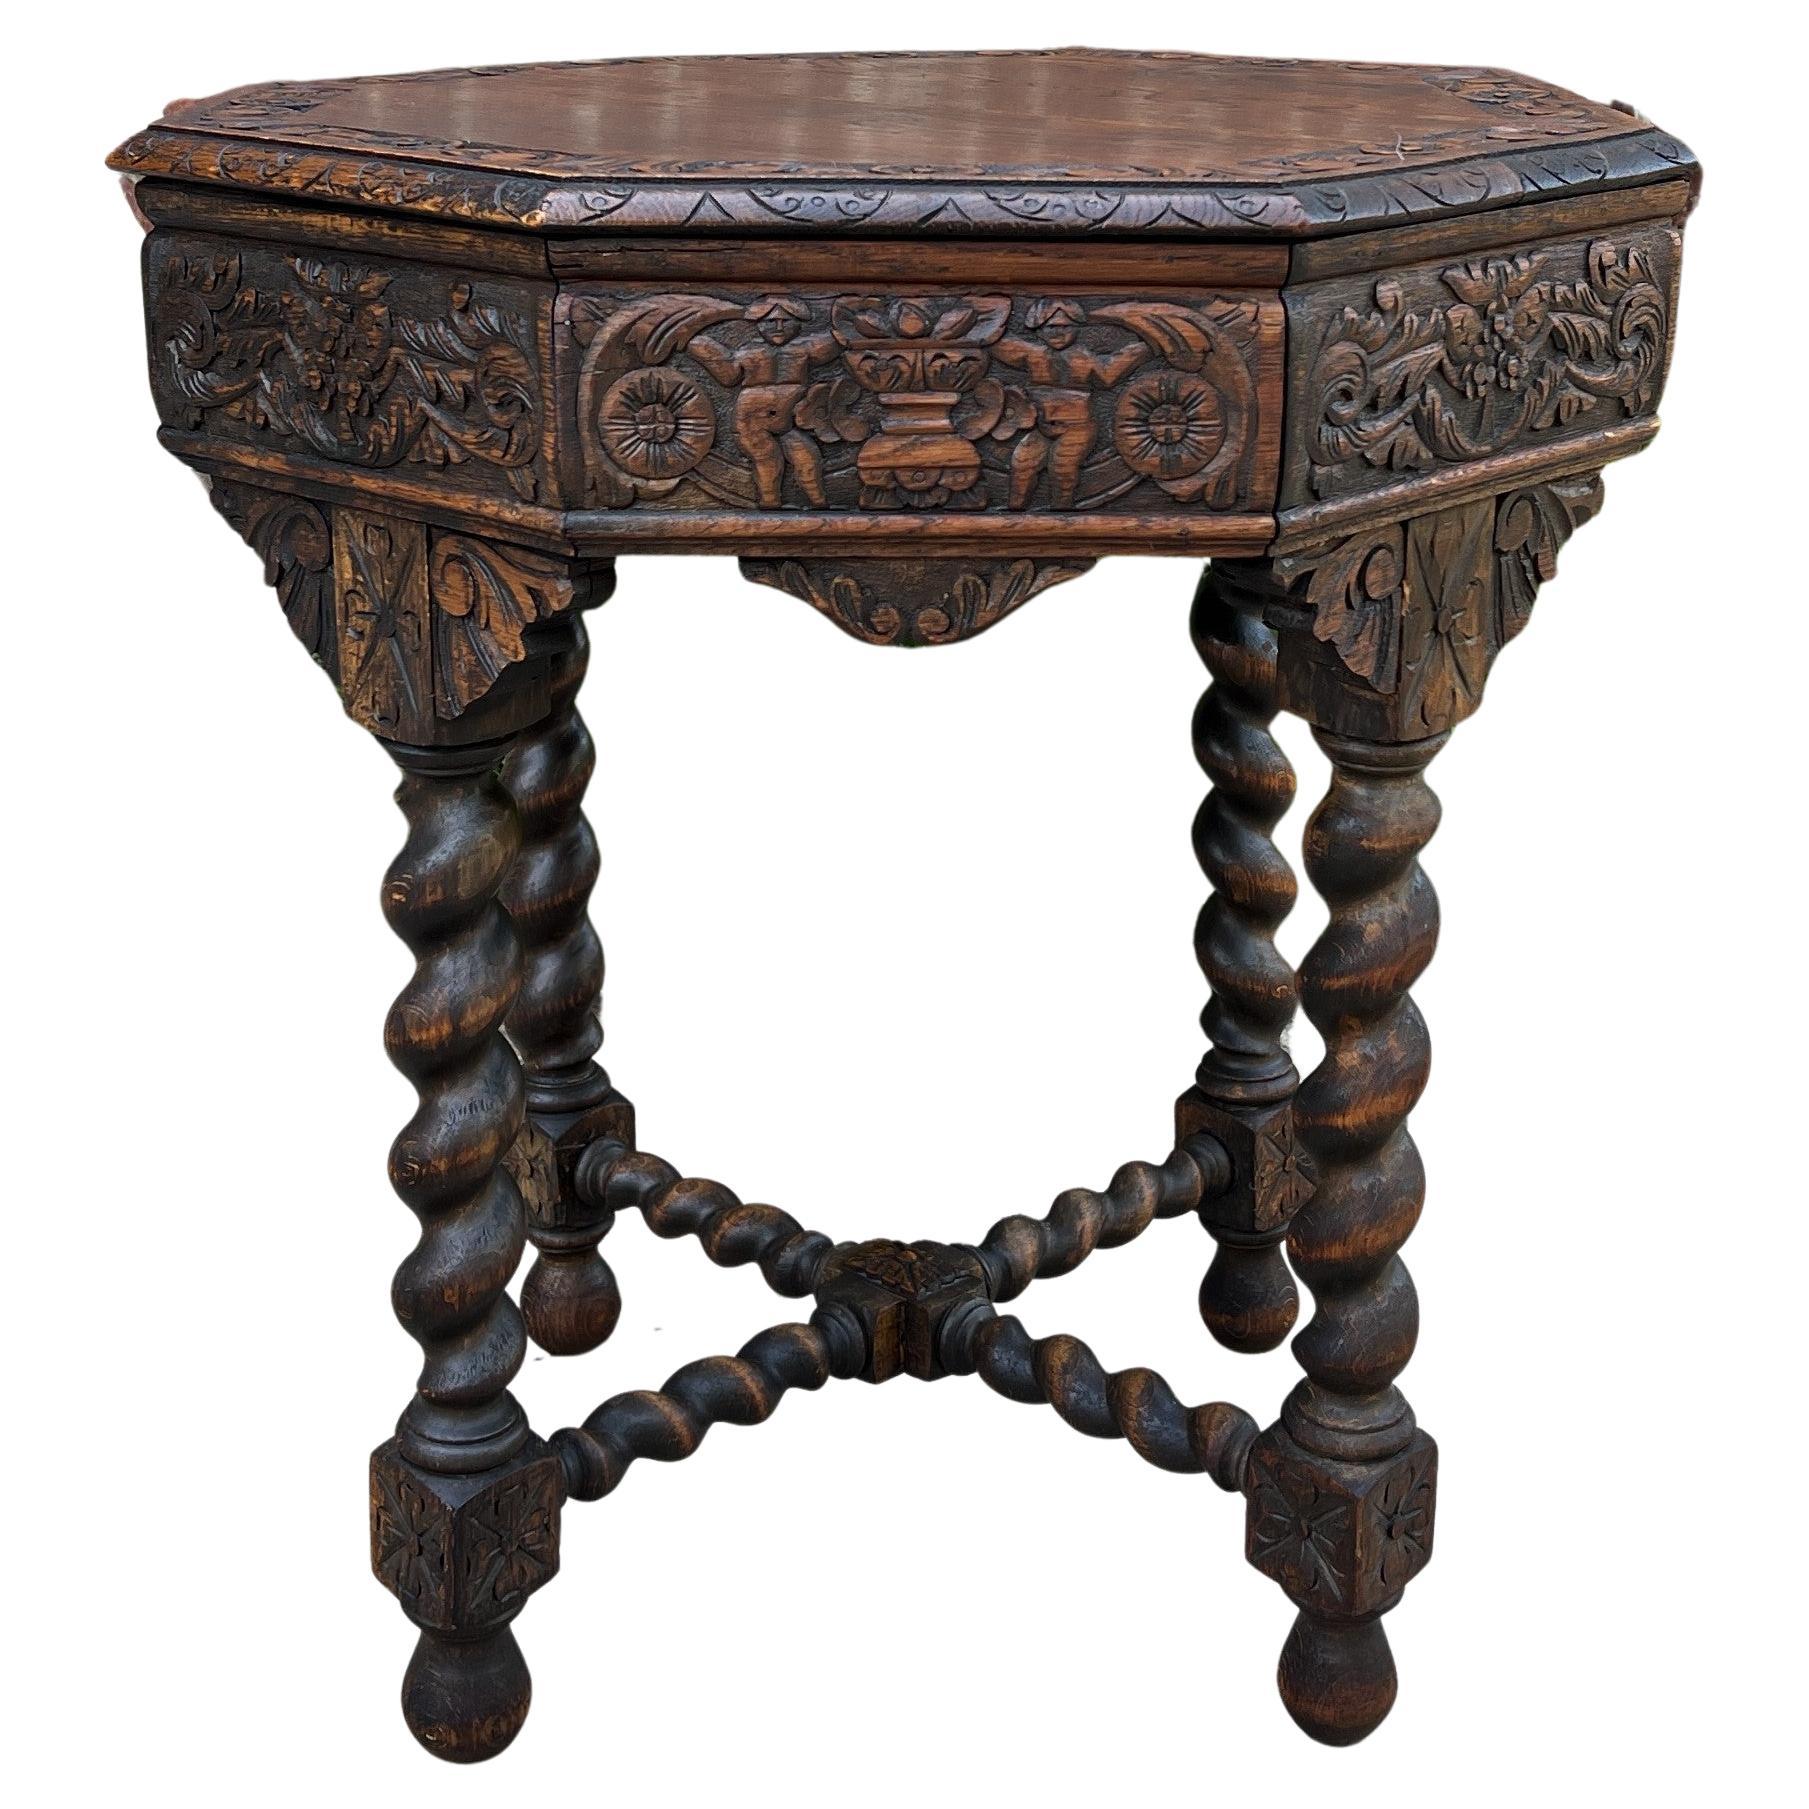 Antiker französischer Tisch BARLEY TWIST, achteckiges geschnitztes Eichenholz, Renaissance-Revival, 19. Jahrhundert